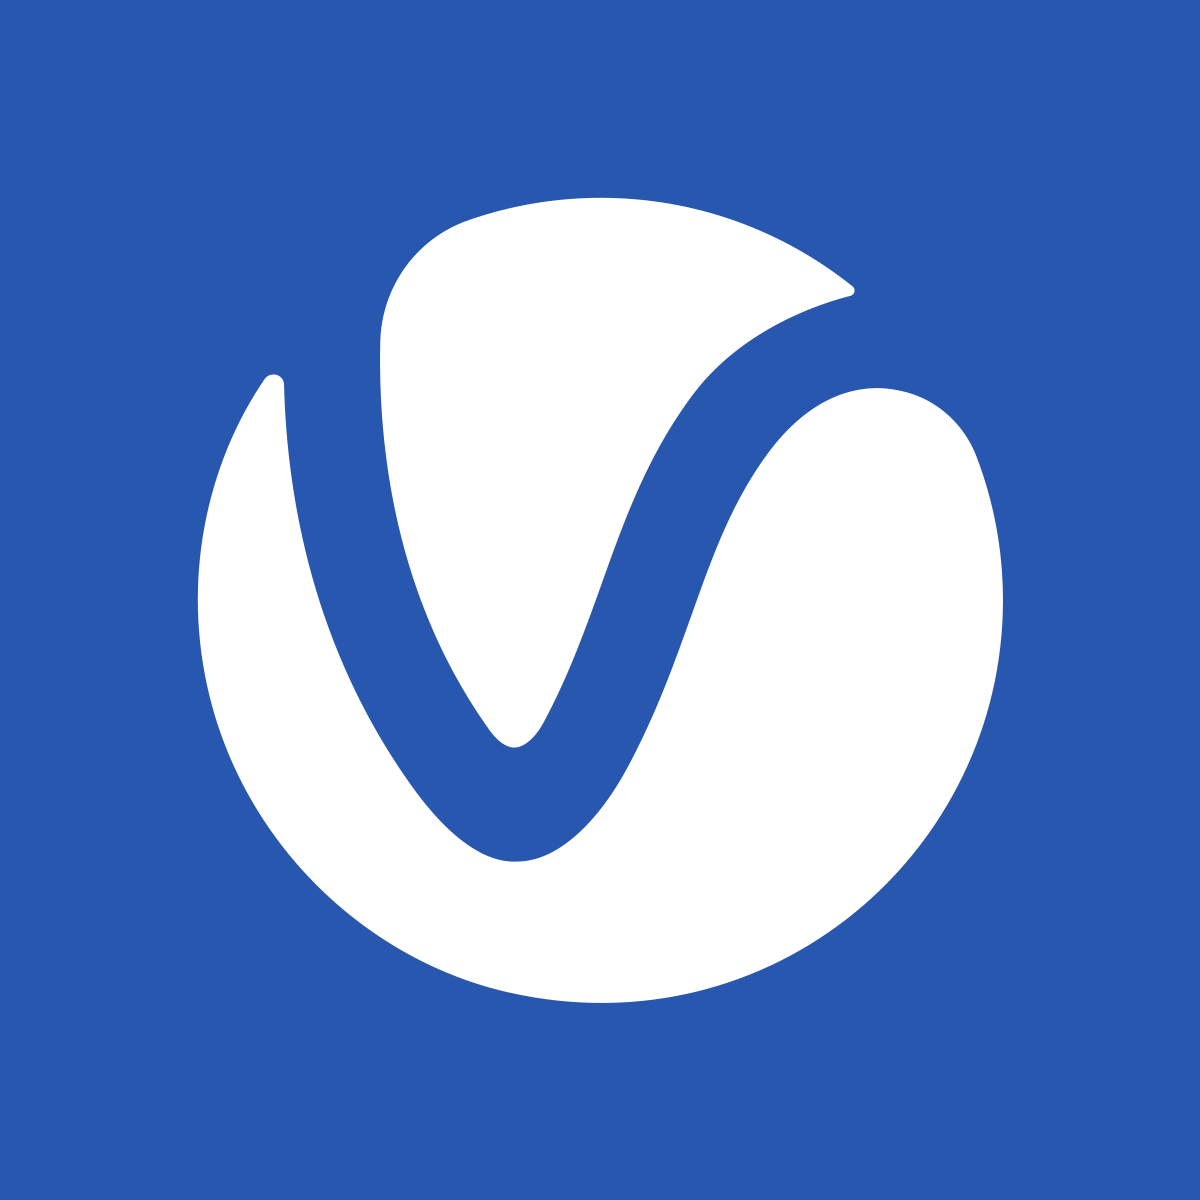 Blue V Logo PSD, 3,000+ High Quality Free PSD Templates for Download